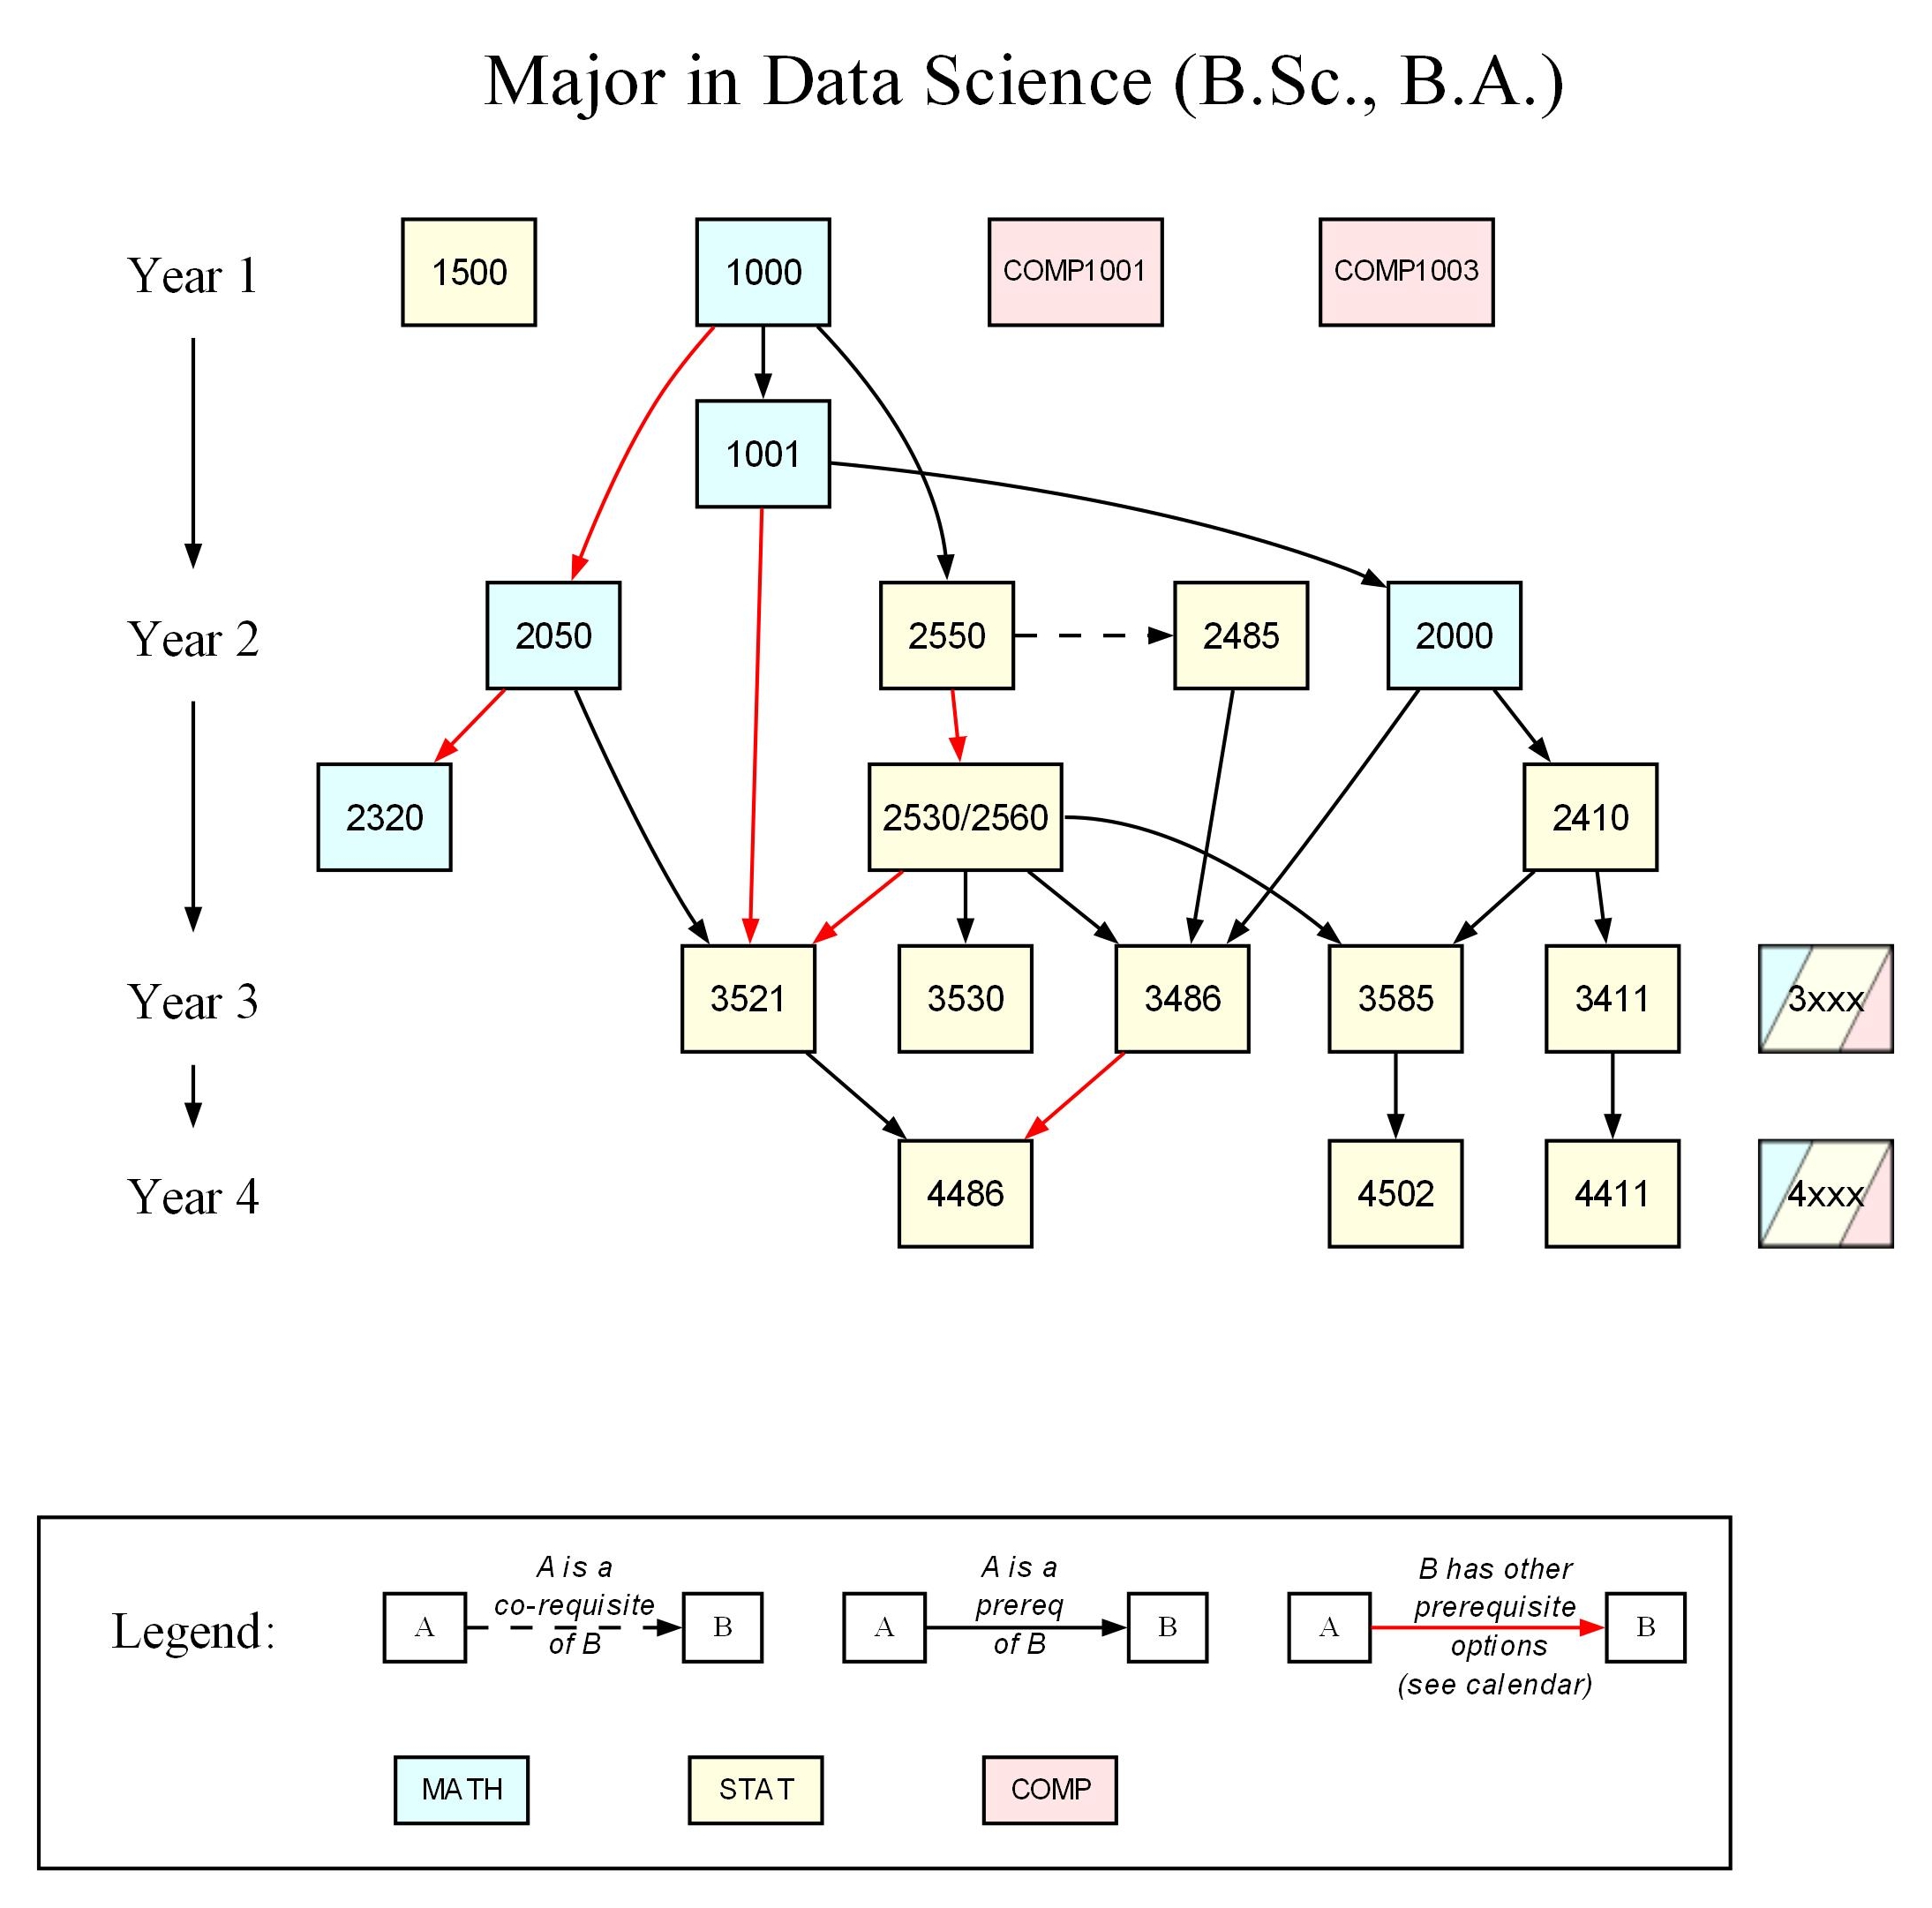 Program map for major in Data Science.